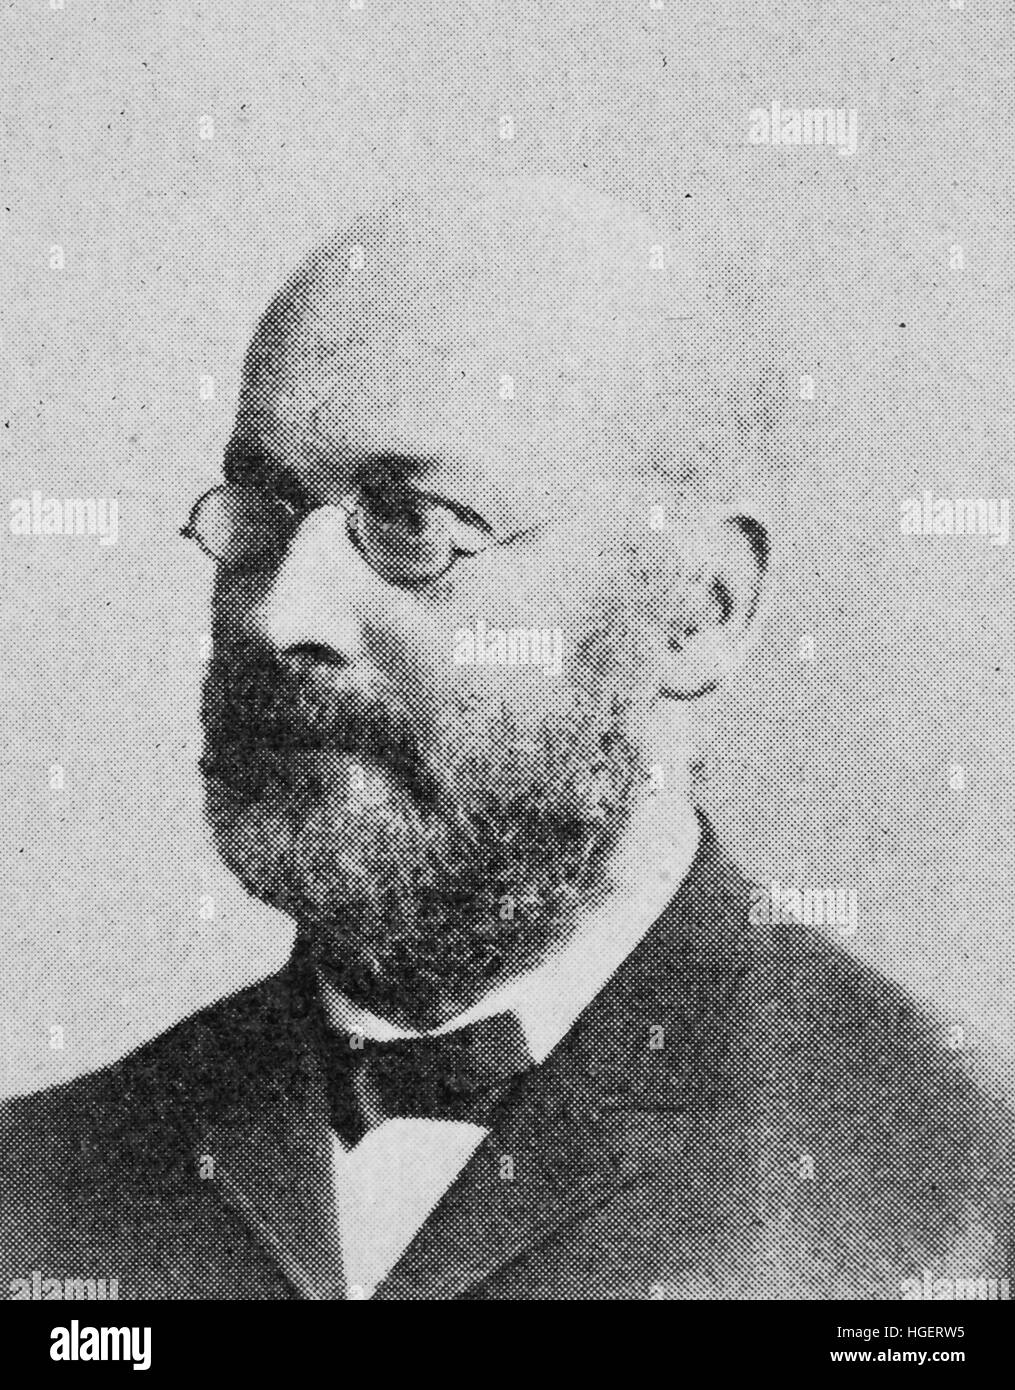 Alfred Kirchhoff, 23 mai 1838 - 8 février 1907, était un naturaliste et géographe allemand., reproduction d'une photo de l'année 1895, l'amélioration numérique Banque D'Images